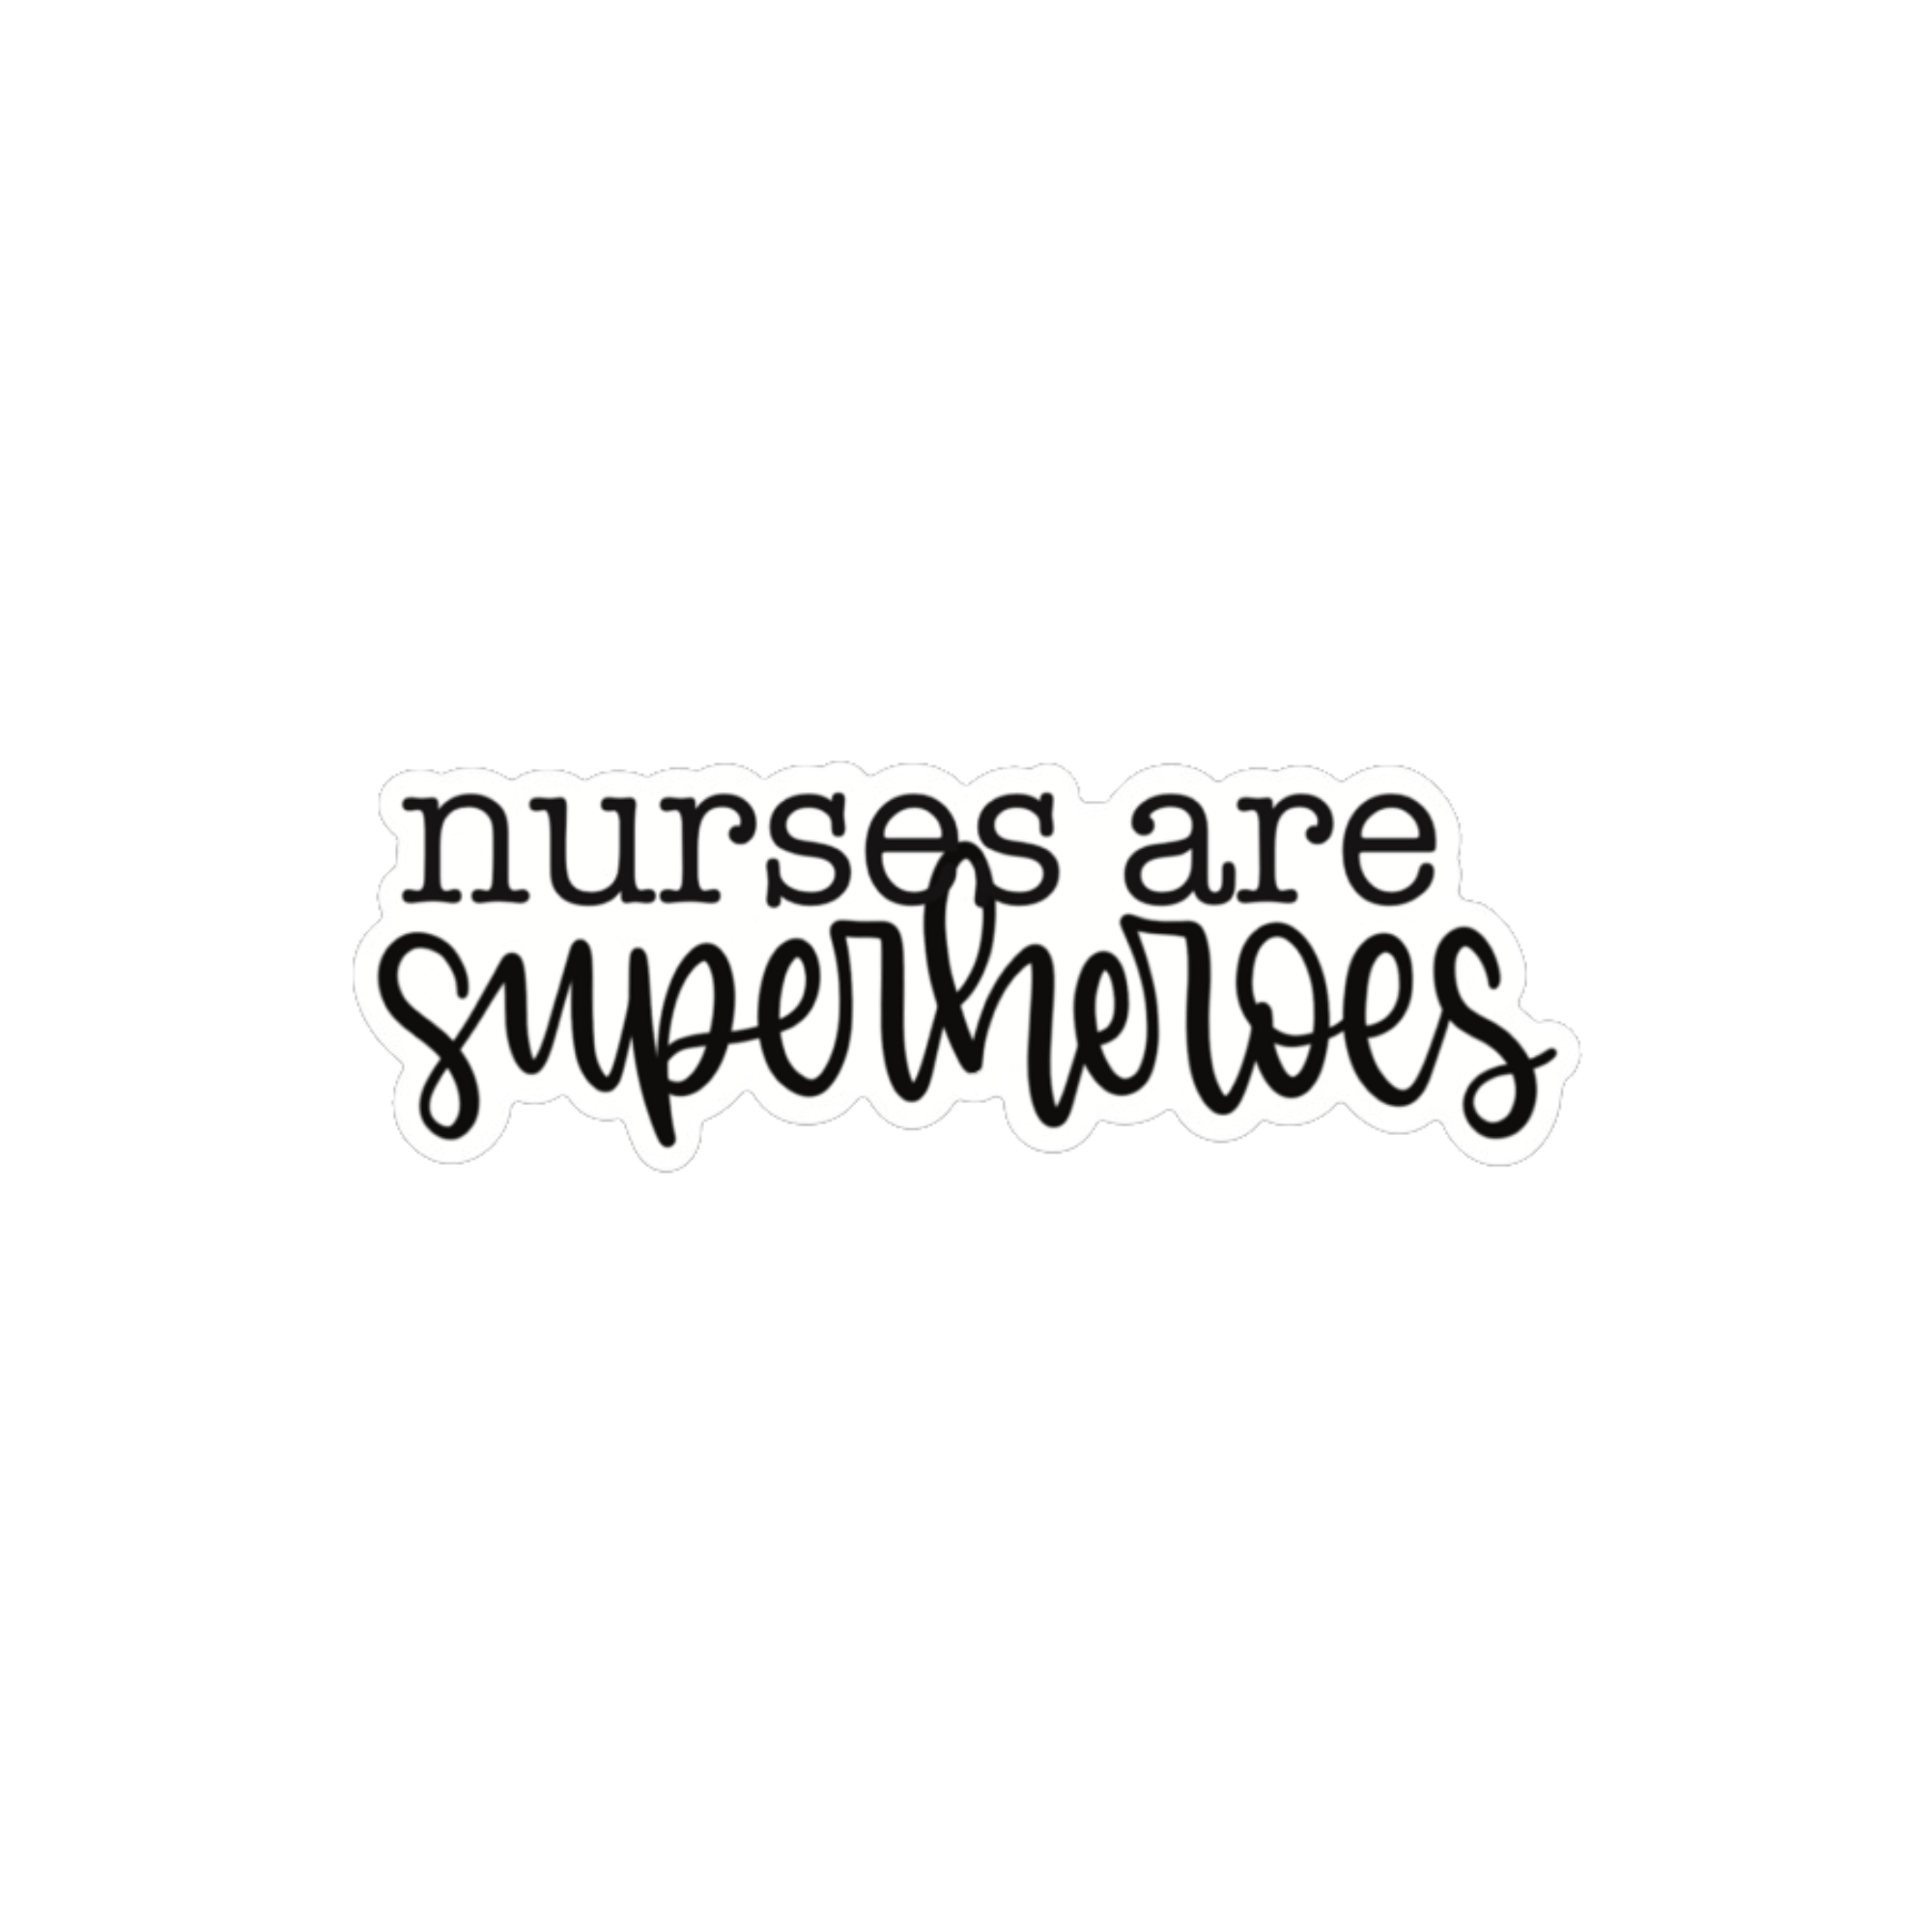 Nurses are Superheroes Vinyl Sticker